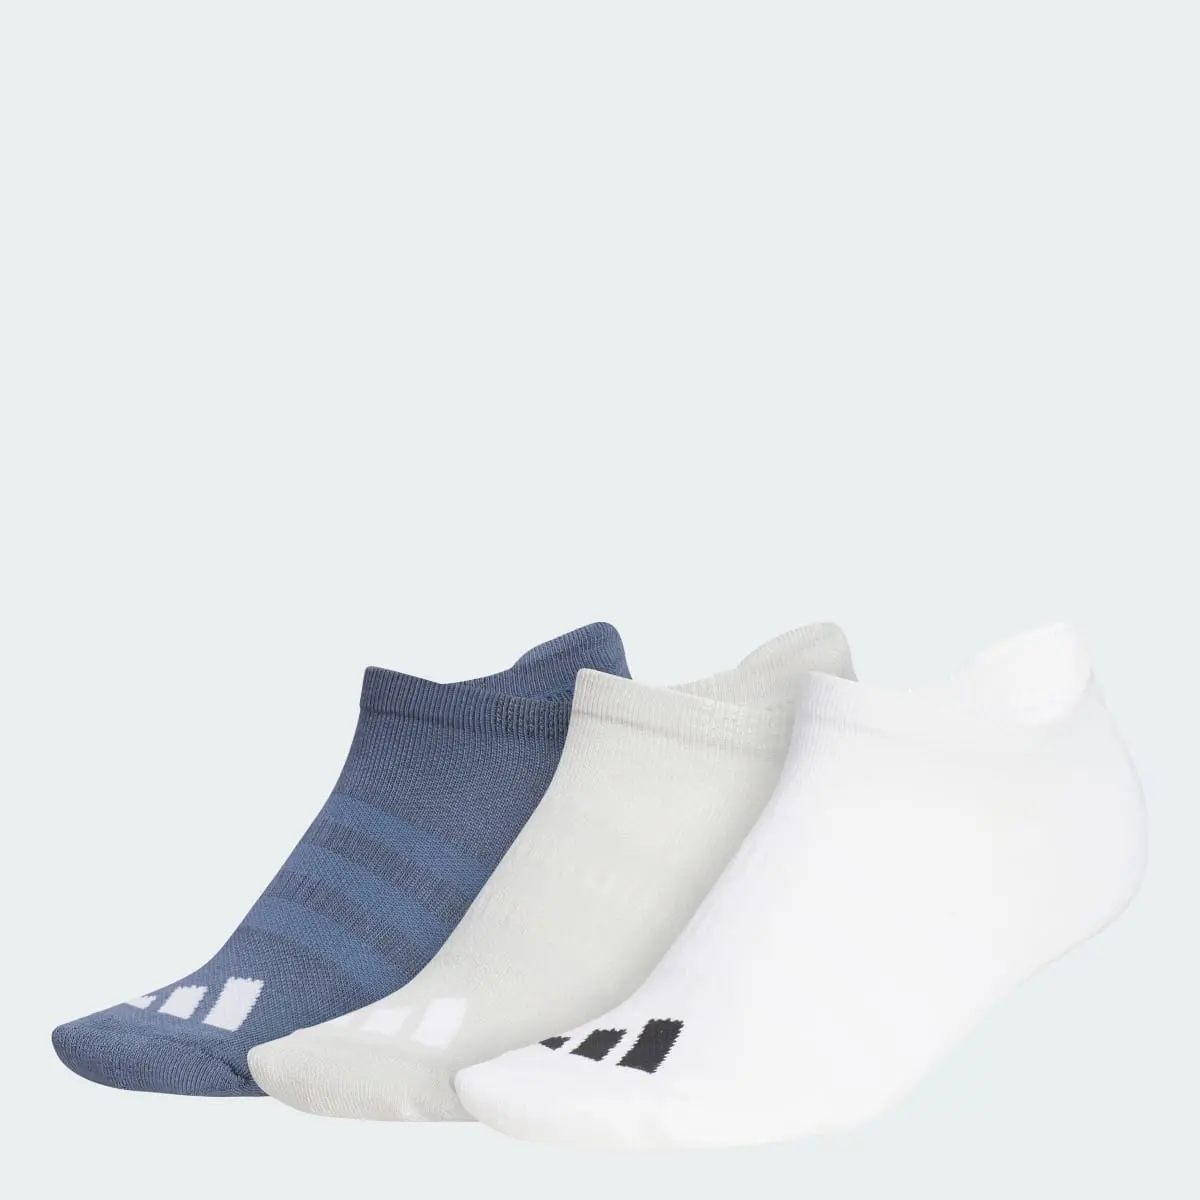 Adidas Meias Curtas Comfort – Mulher (3 pares). 1